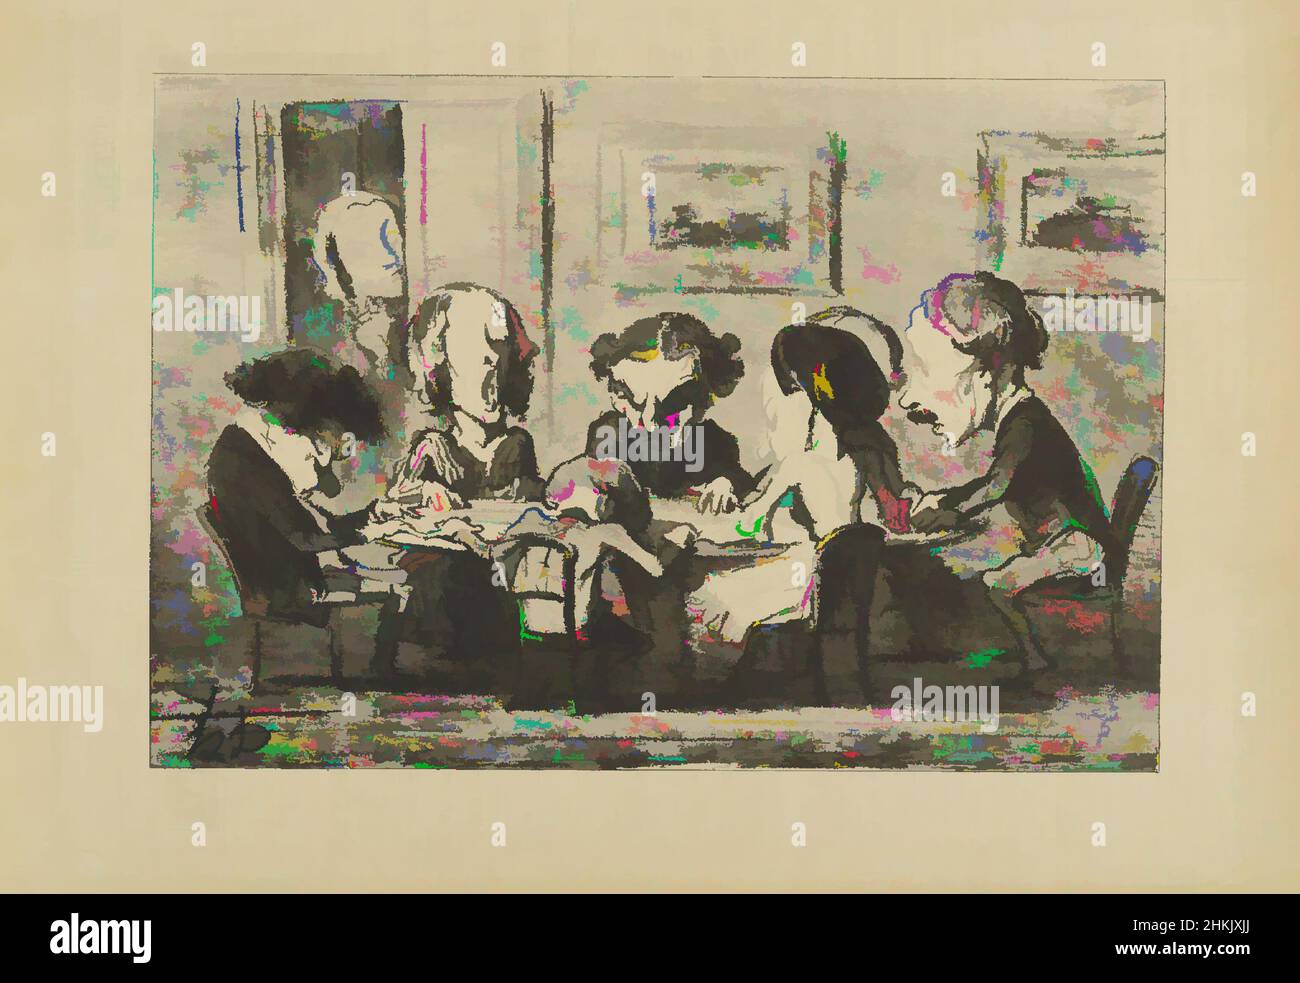 Kunst inspiriert von eh! Bien M'sieu, Ça Tourne T'y?..., Honoré Daumier, Französisch, 1808-1879, Lithographie auf Zeitungspapier, Frankreich, 16.-17. Mai 1853, Blatt: 9 9/16 x 14 Zoll, 24,3 x 35,6 cm, Klassische Werke, modernisiert von Artotop mit einem Schuss Moderne. Formen, Farbe und Wert, auffällige visuelle Wirkung auf Kunst. Emotionen durch Freiheit von Kunstwerken auf zeitgemäße Weise. Eine zeitlose Botschaft, die eine wild kreative neue Richtung verfolgt. Künstler, die sich dem digitalen Medium zuwenden und die Artotop NFT erschaffen Stockfoto